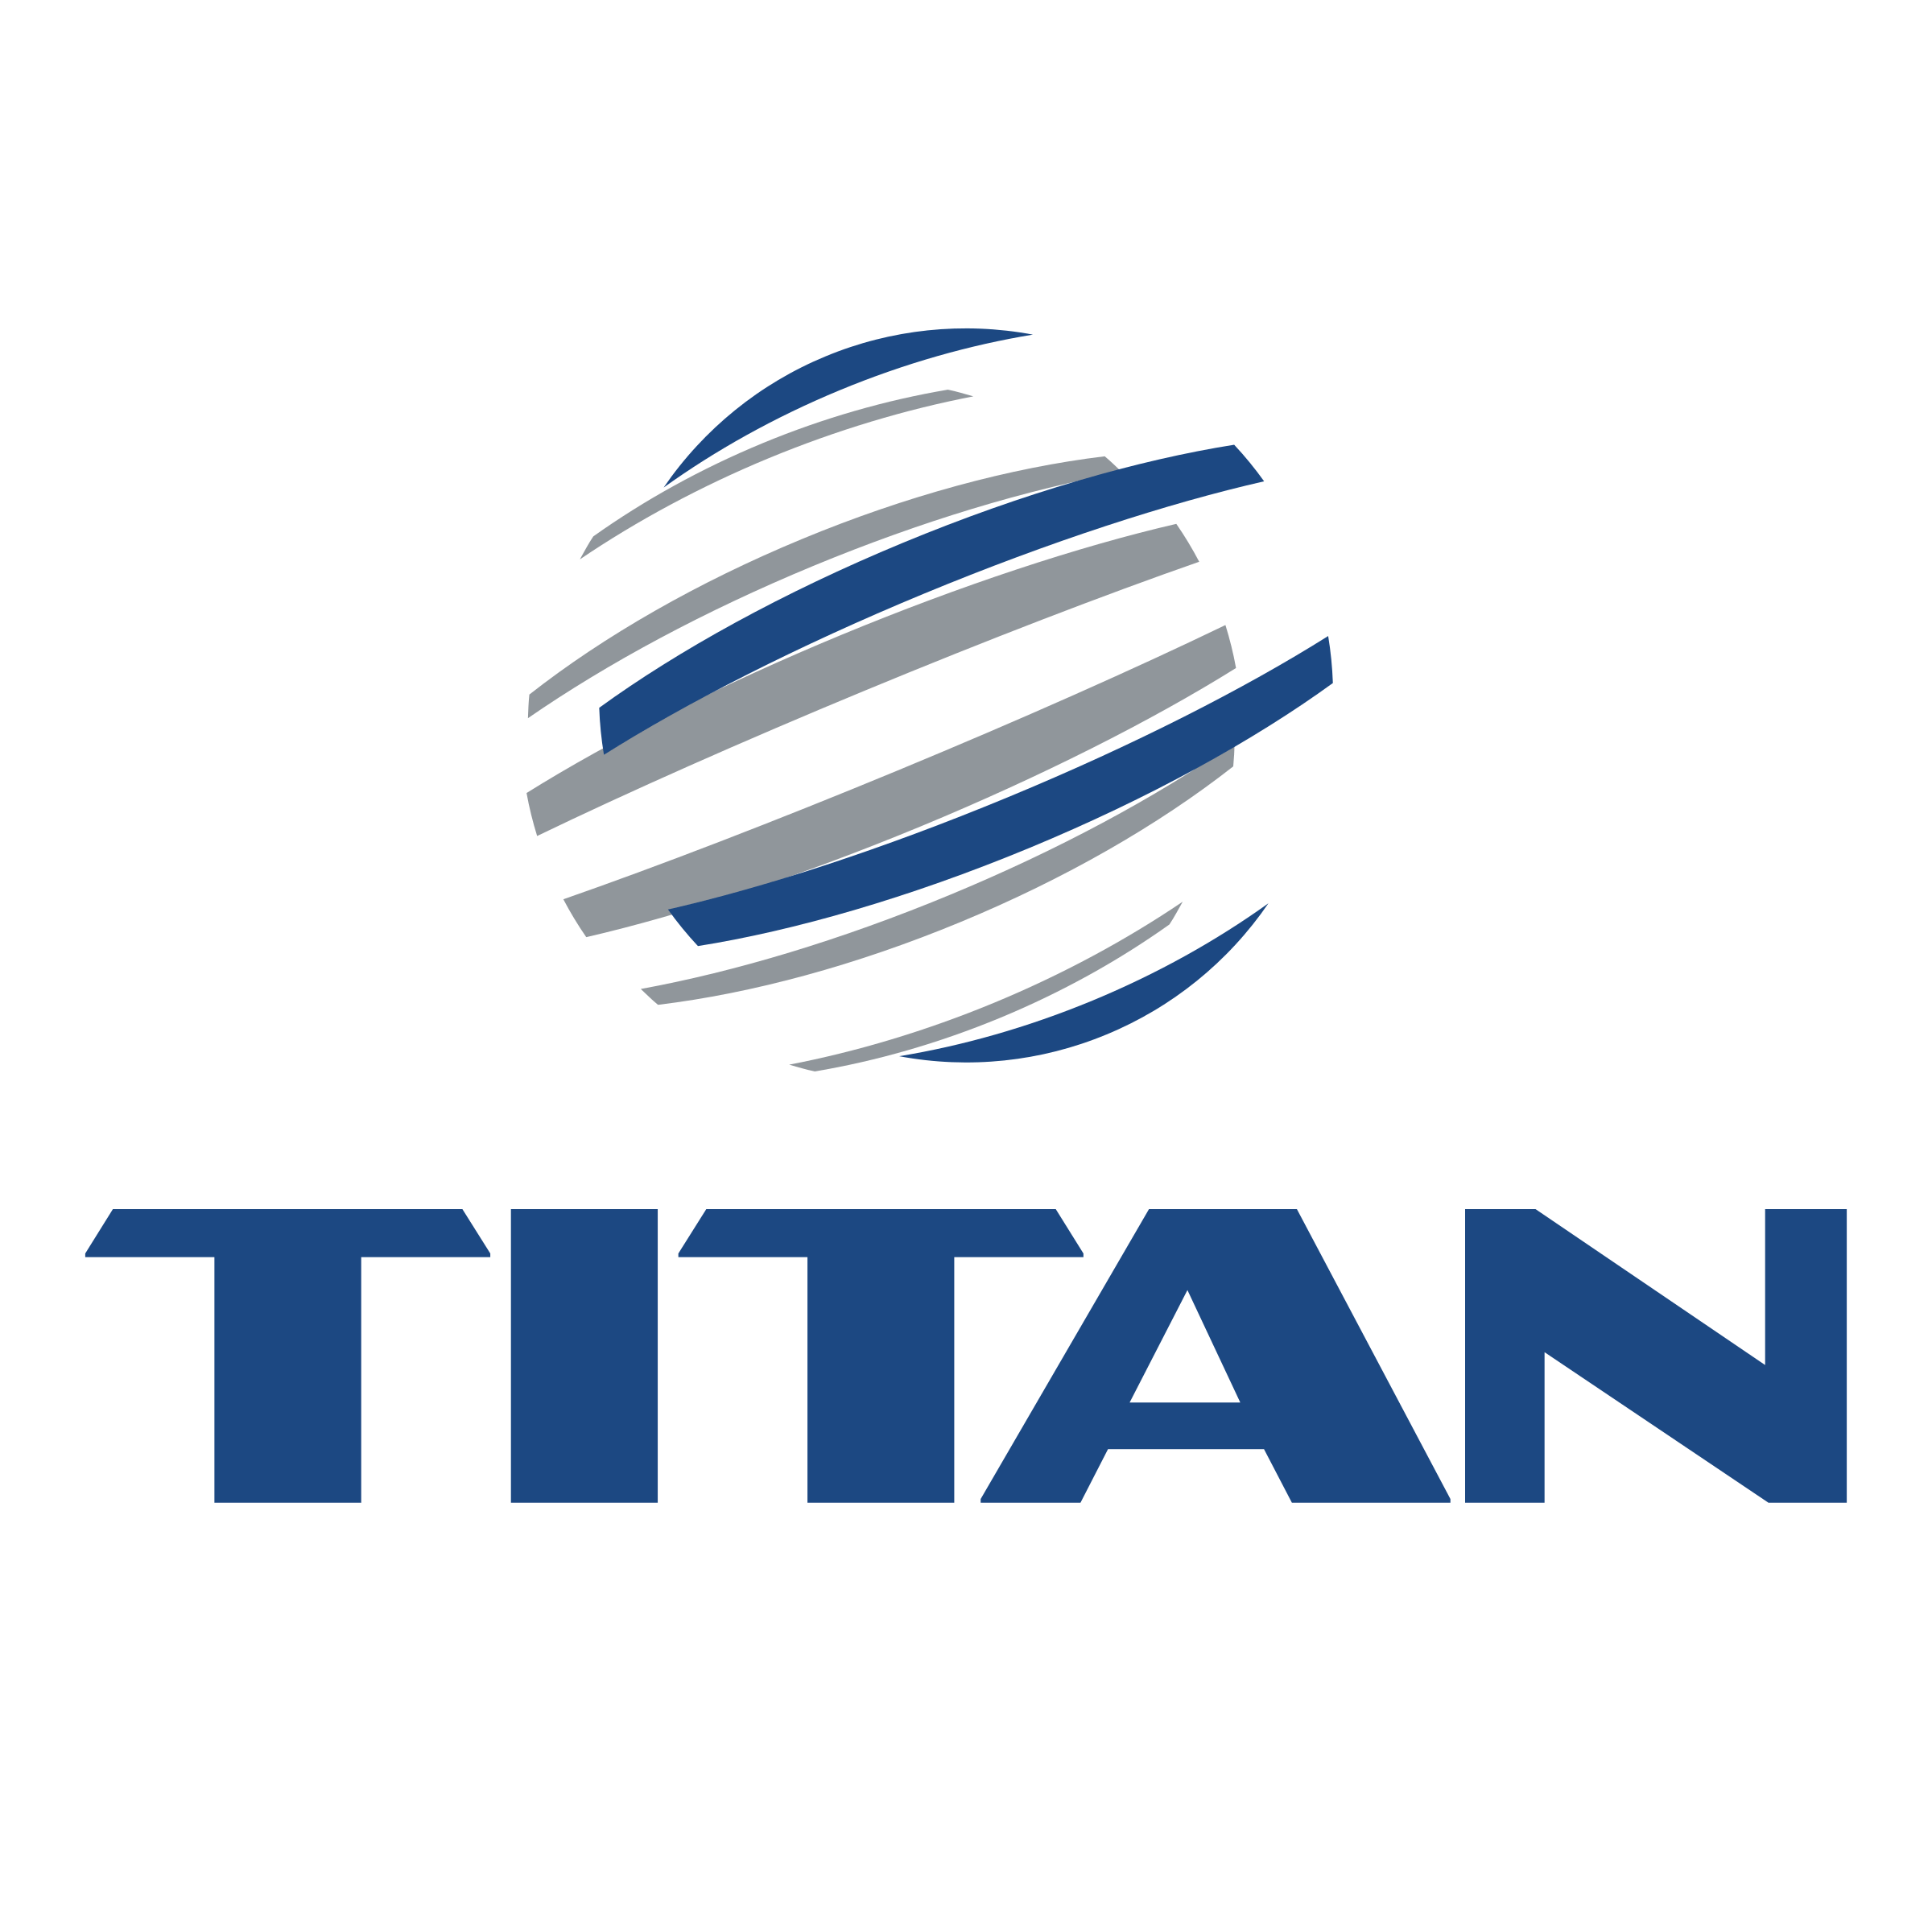 titan-1-logo-png-transparent